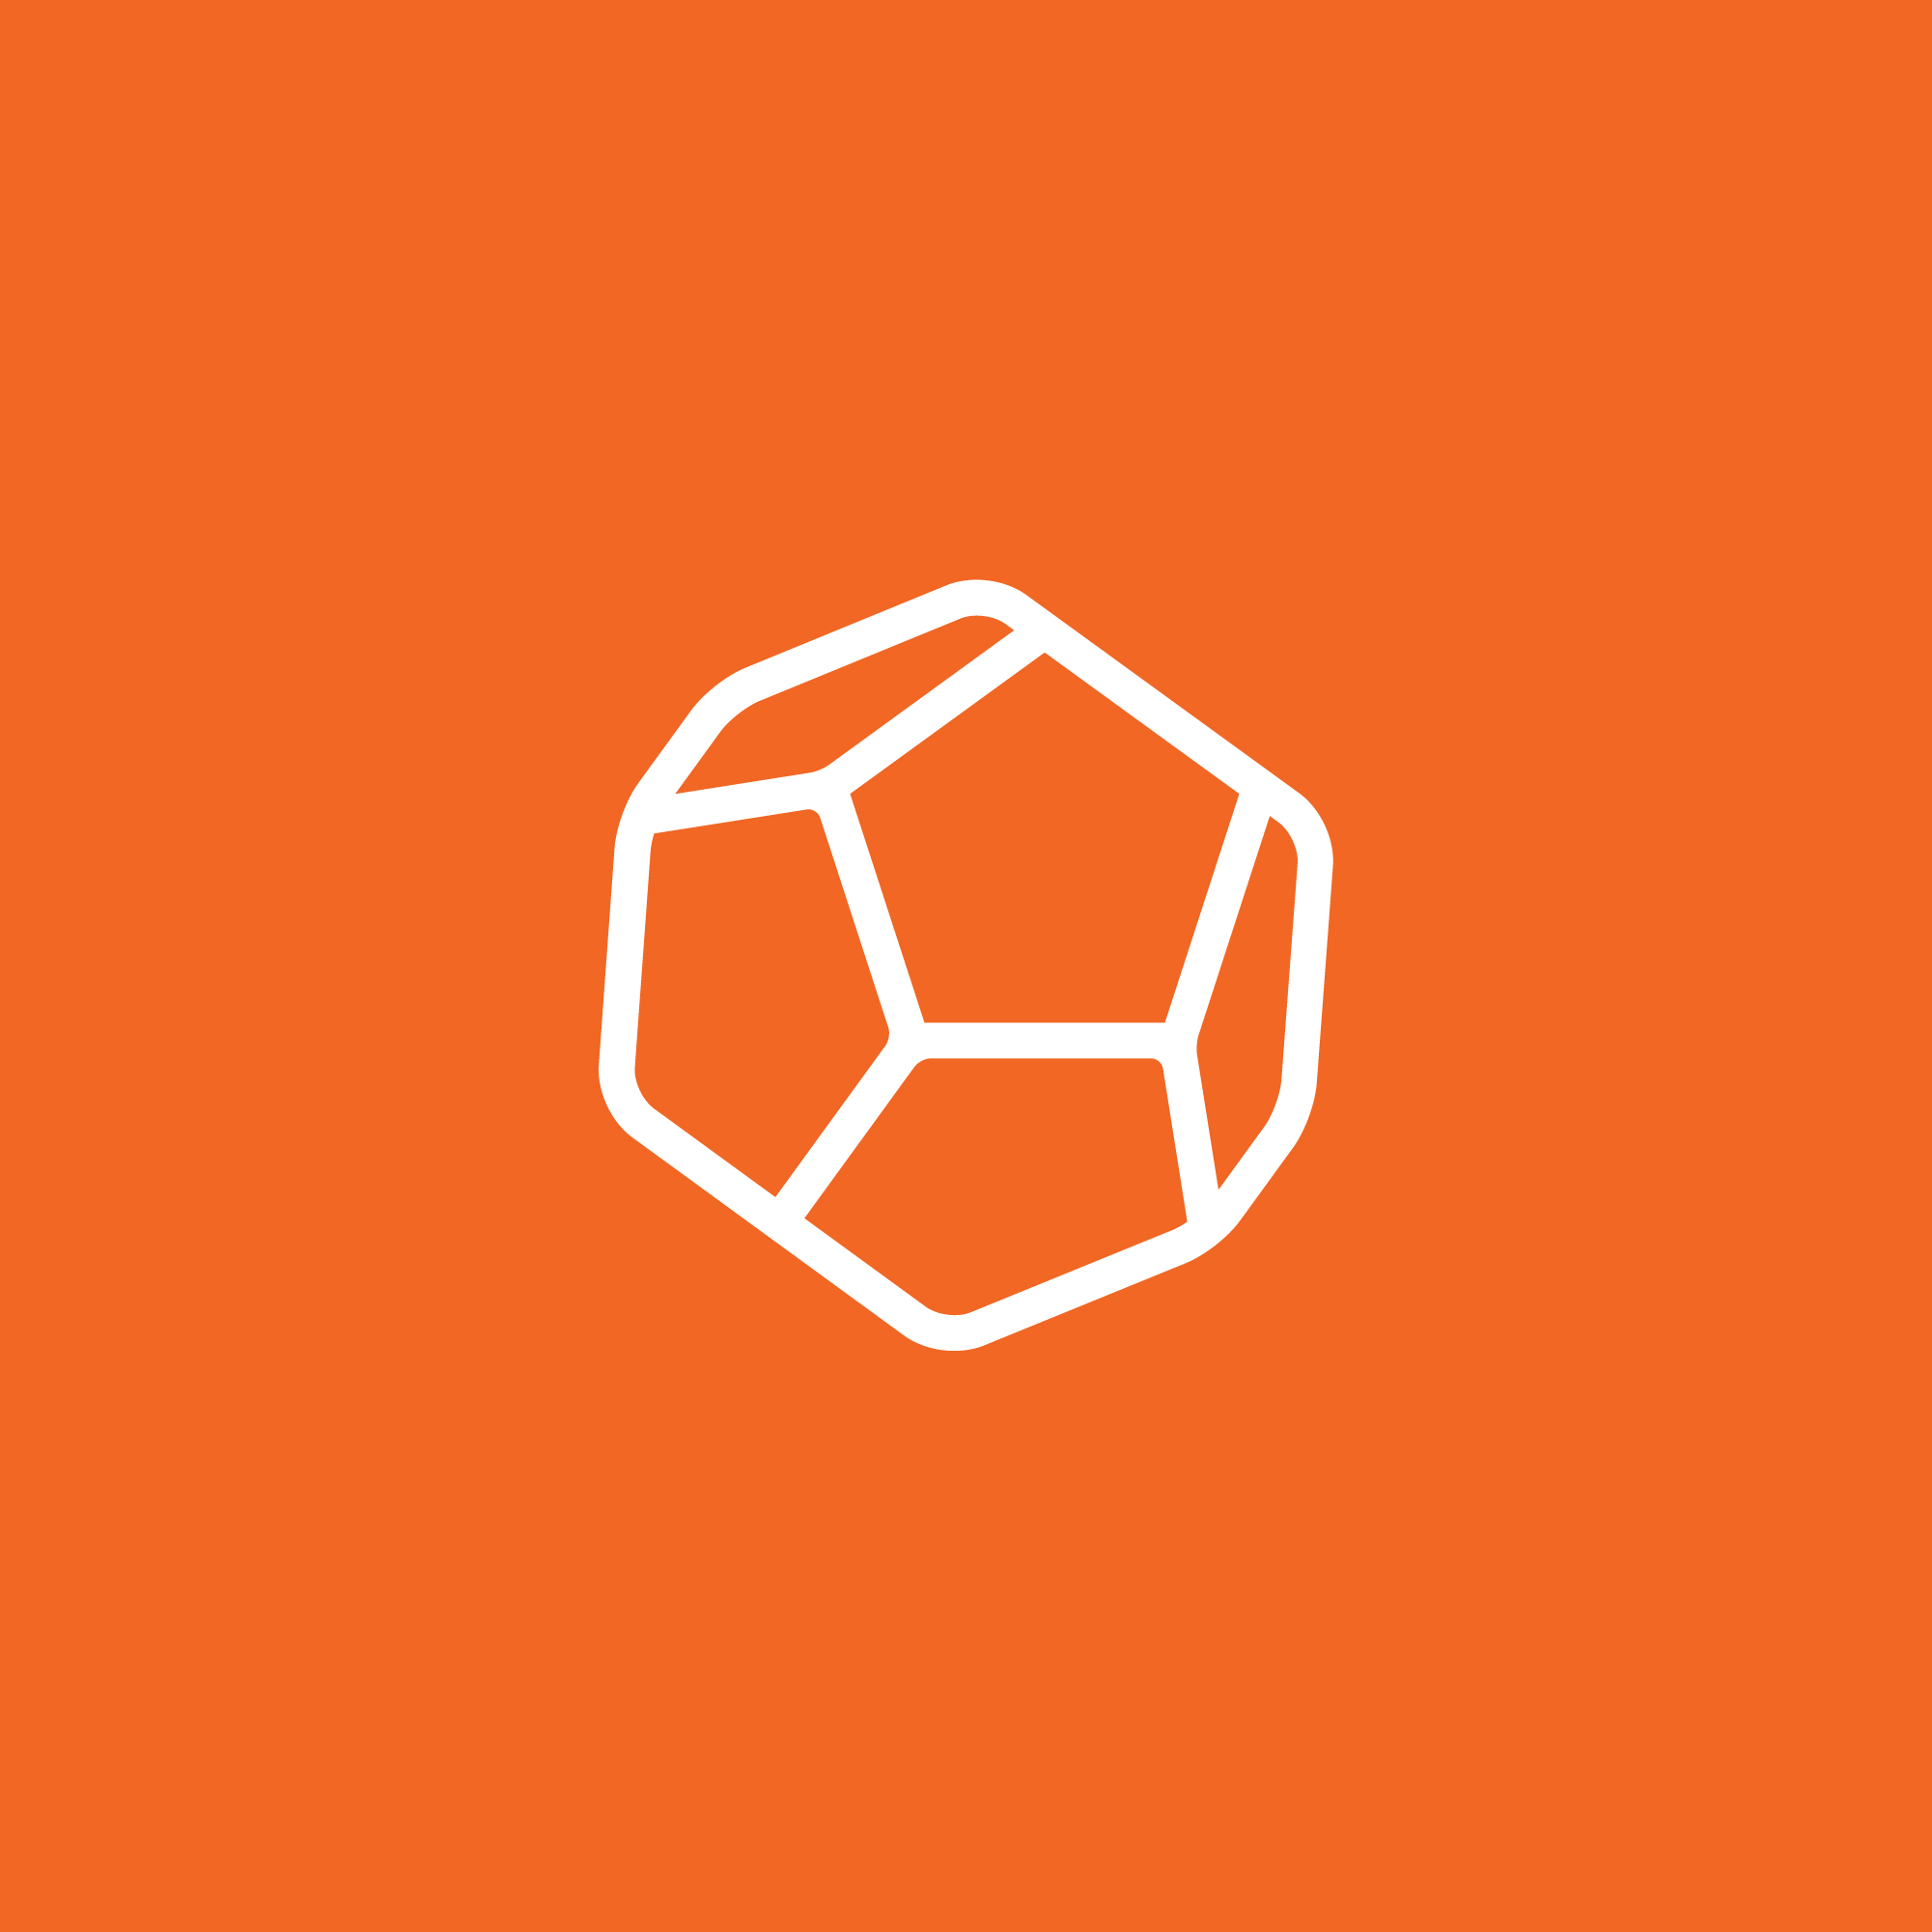 logo-design- black-white-minimalist-shape-geometric-orange-background